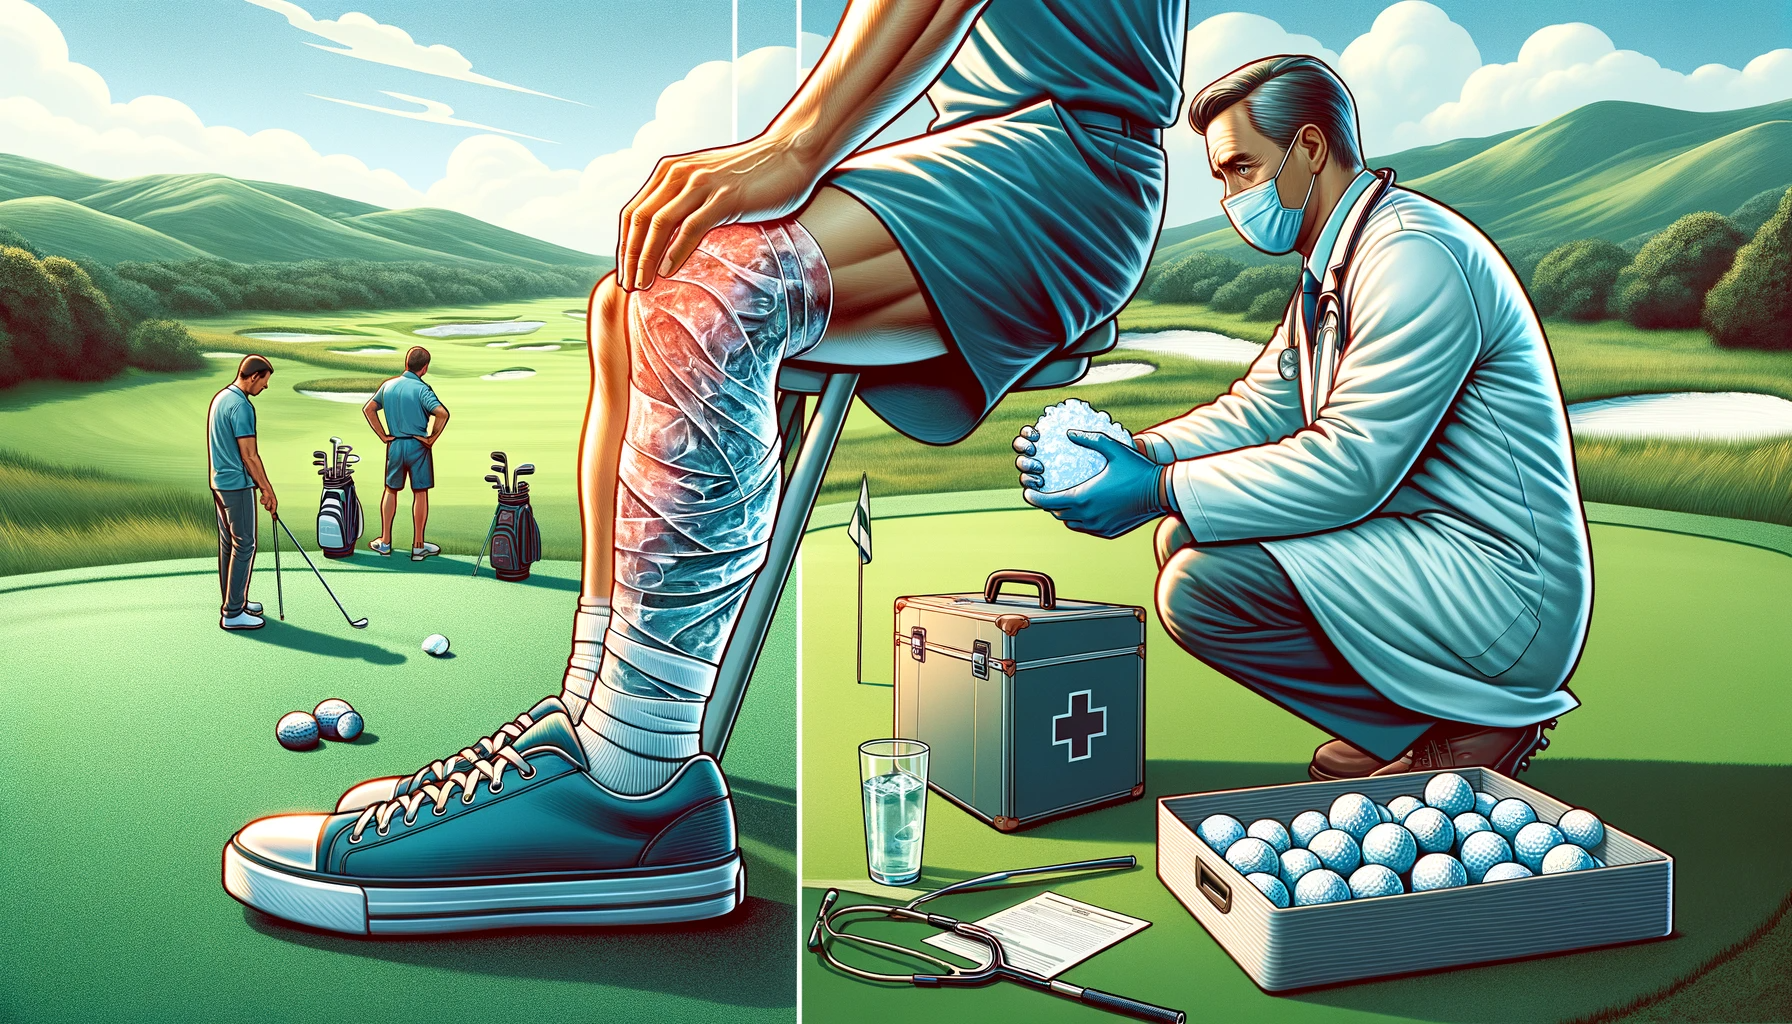 골프에서의 부상 예방과 관리: 스윙 기술&#44; 클럽 피팅&#44; 신체 체크포인트 - 부상 발생 시 조치